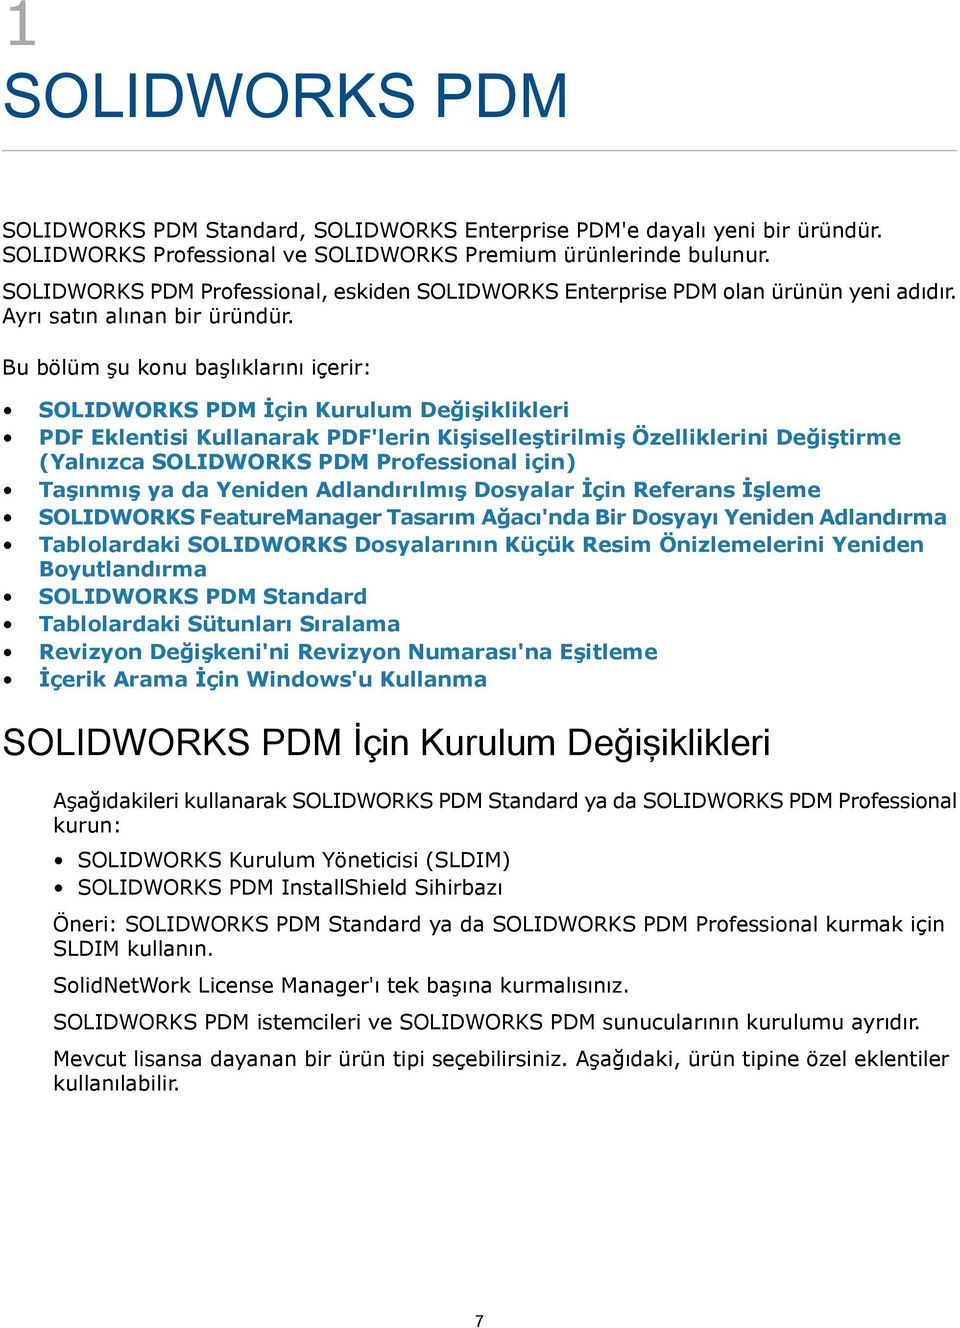 Bu bölüm şu konu başlıklarını içerir: SOLIDWORKS PDM İçin Kurulum Değişiklikleri PDF Eklentisi Kullanarak PDF'lerin Kişiselleştirilmiş Özelliklerini Değiştirme (Yalnızca SOLIDWORKS PDM Professional